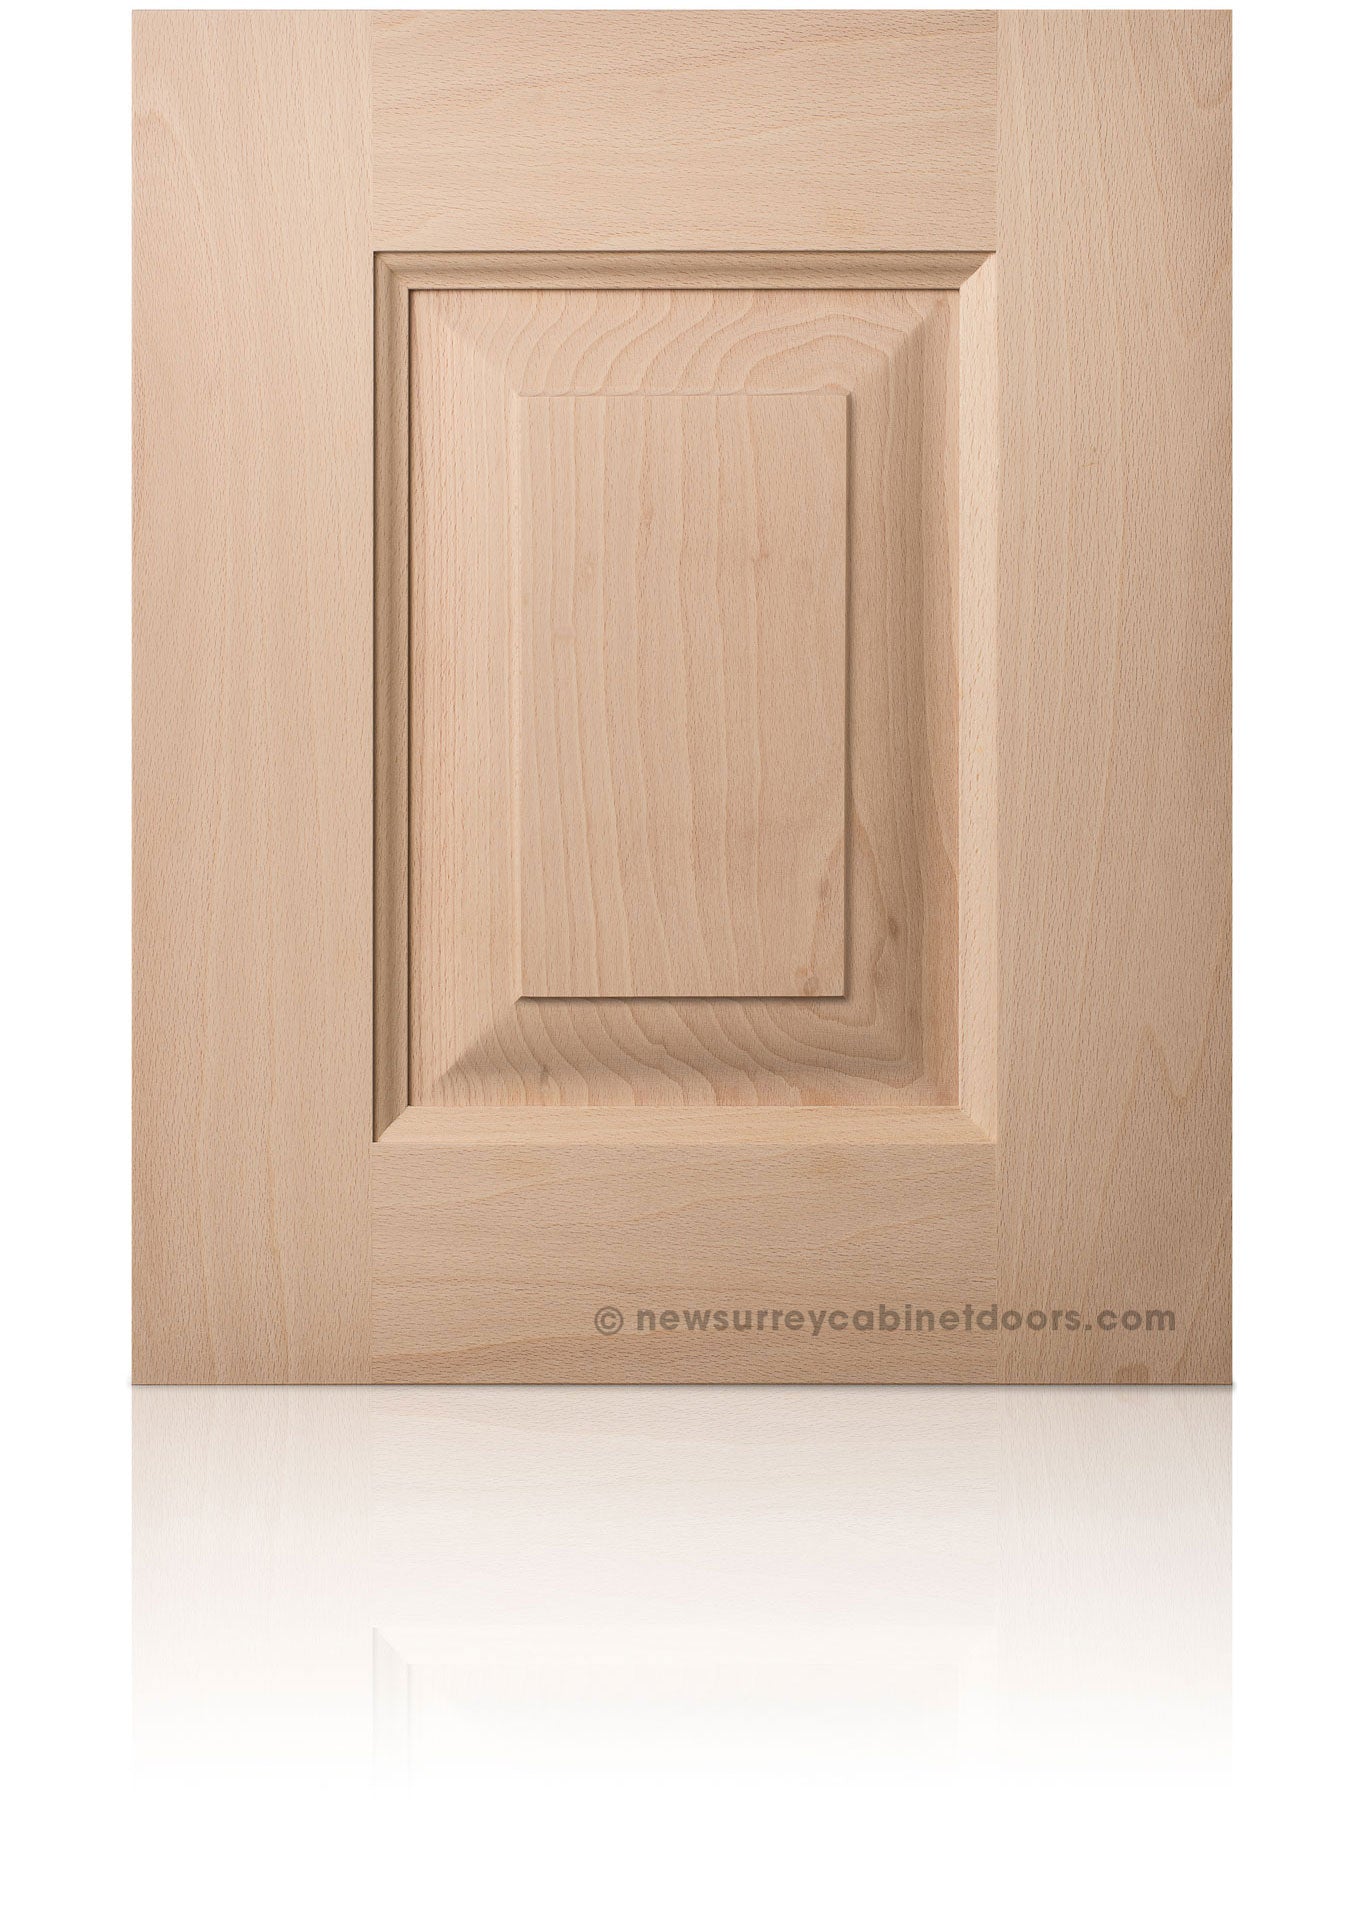 Birch New Surrey Cabinet Doors